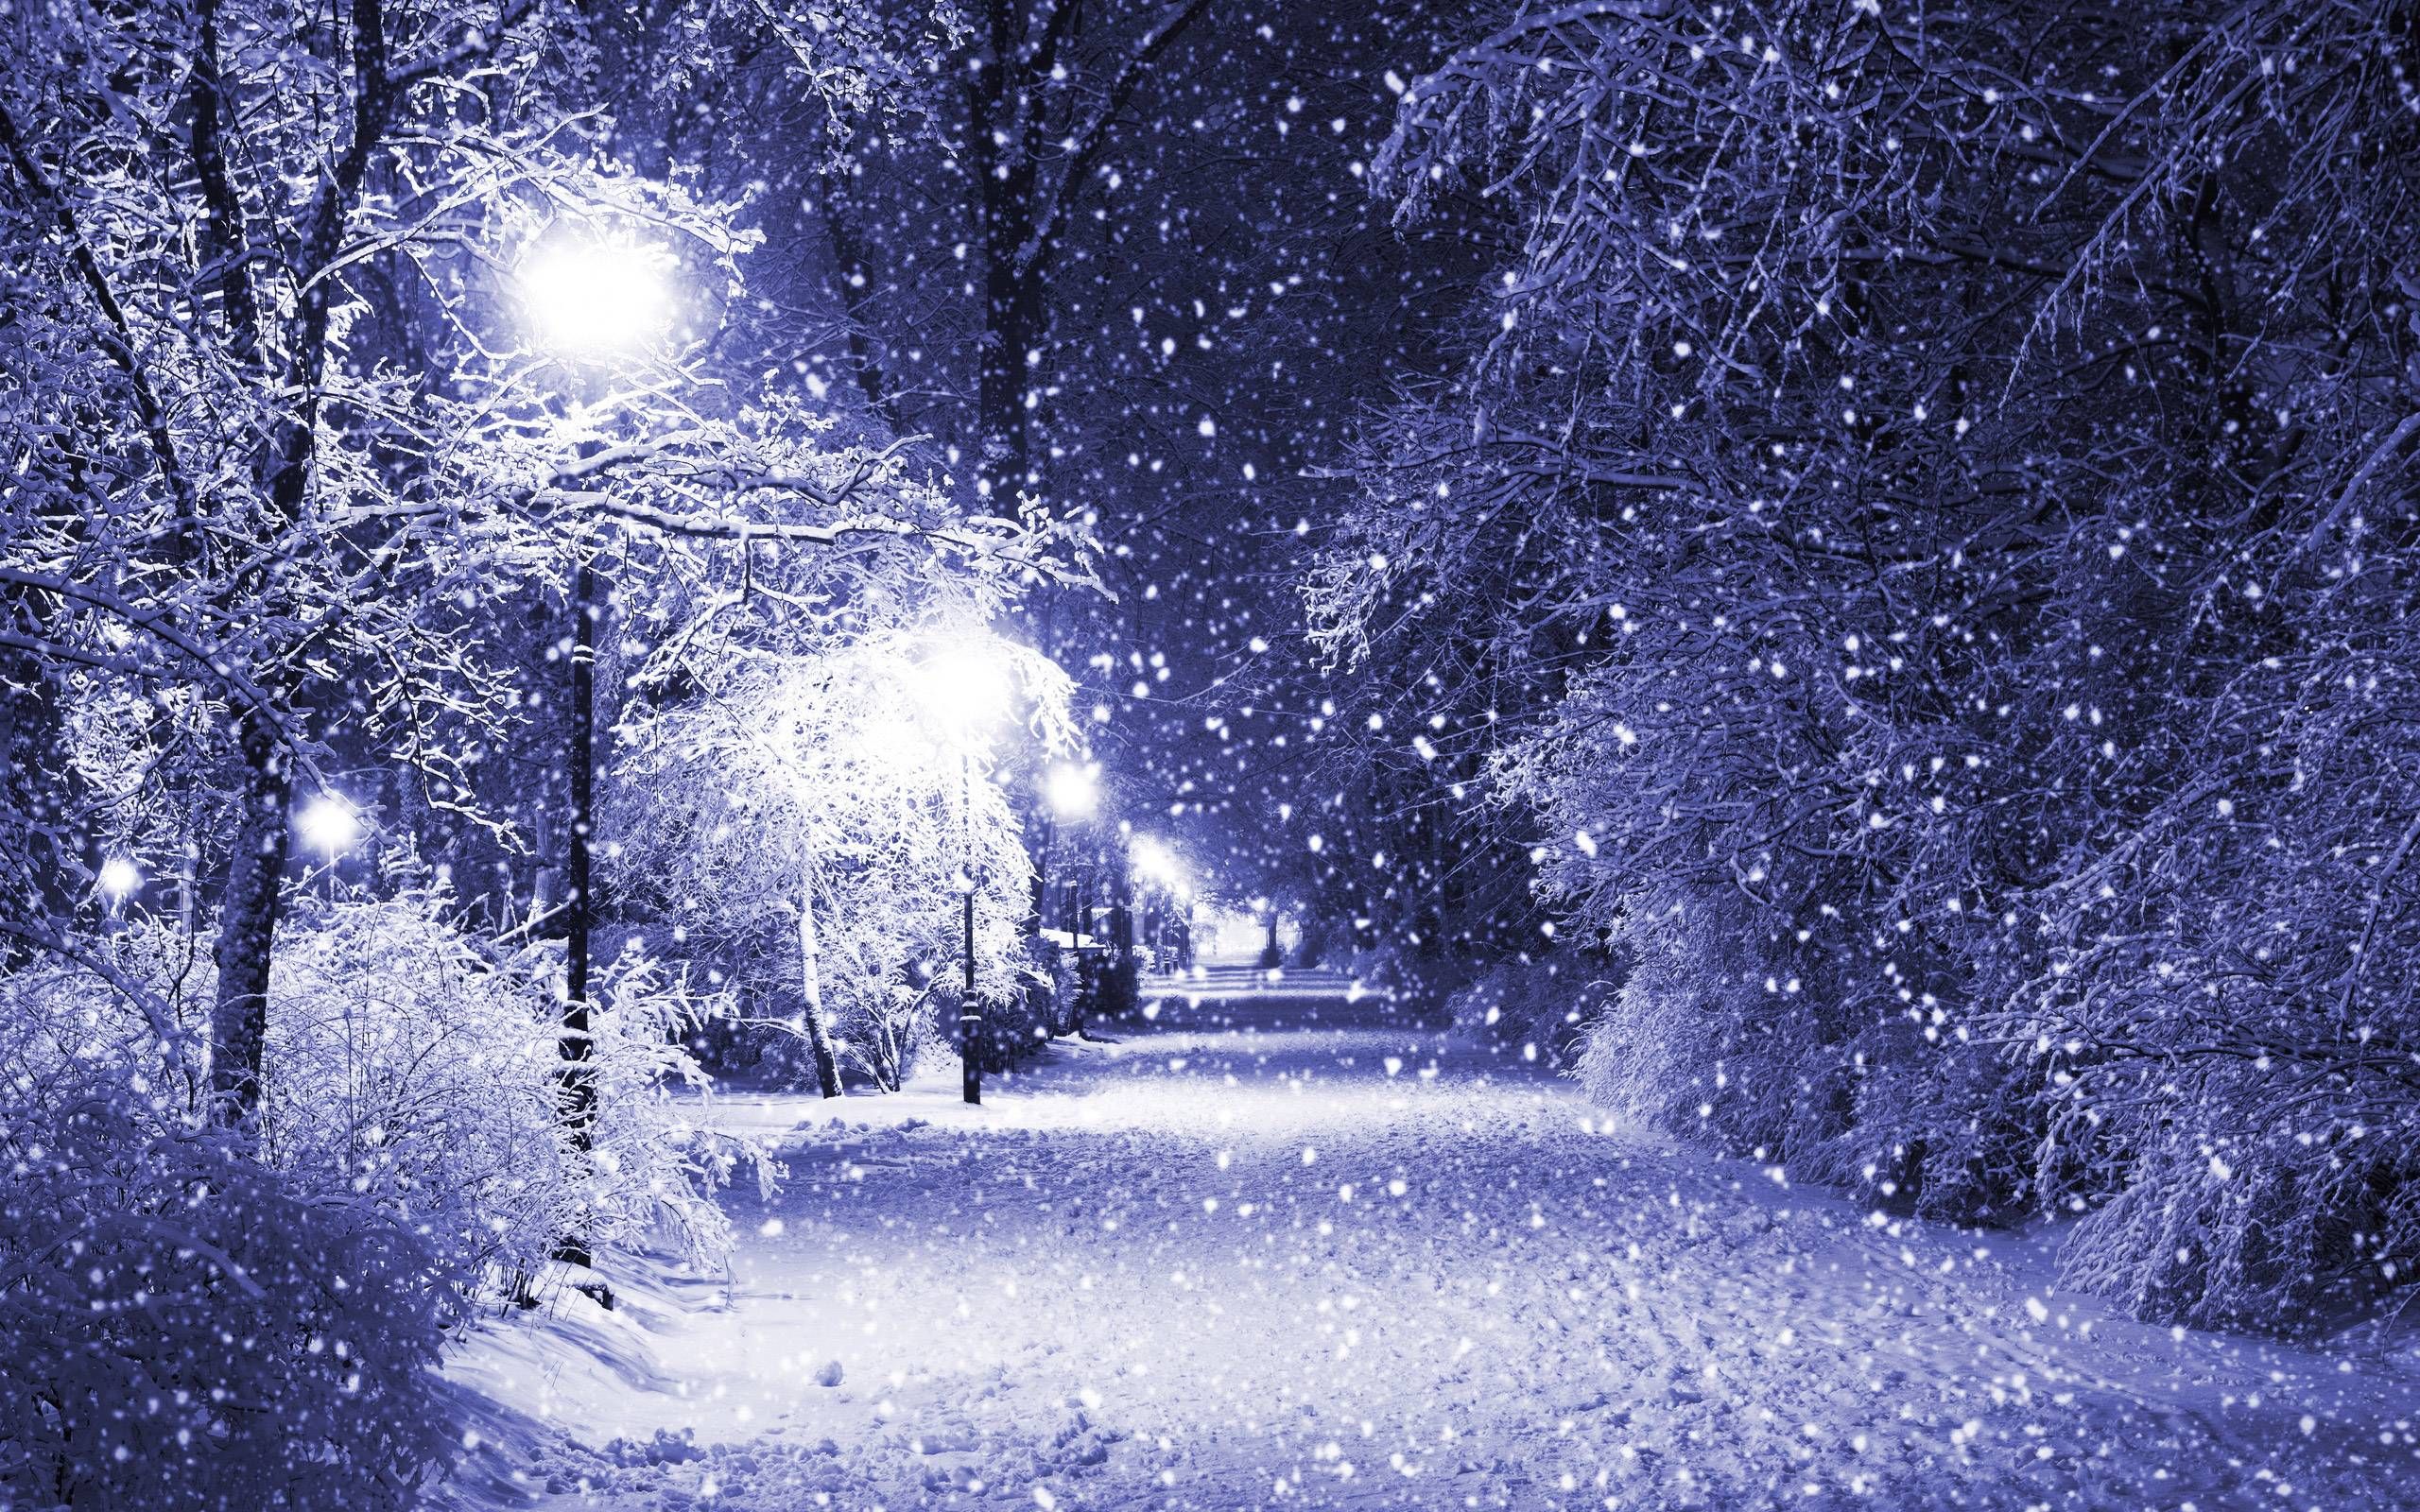 Snowy Christmas Night Wallpaper Best HD Desktop Wallpaper 1080p HD Wallpaper. Winter wallpaper, Winter scenery, Free winter wallpaper